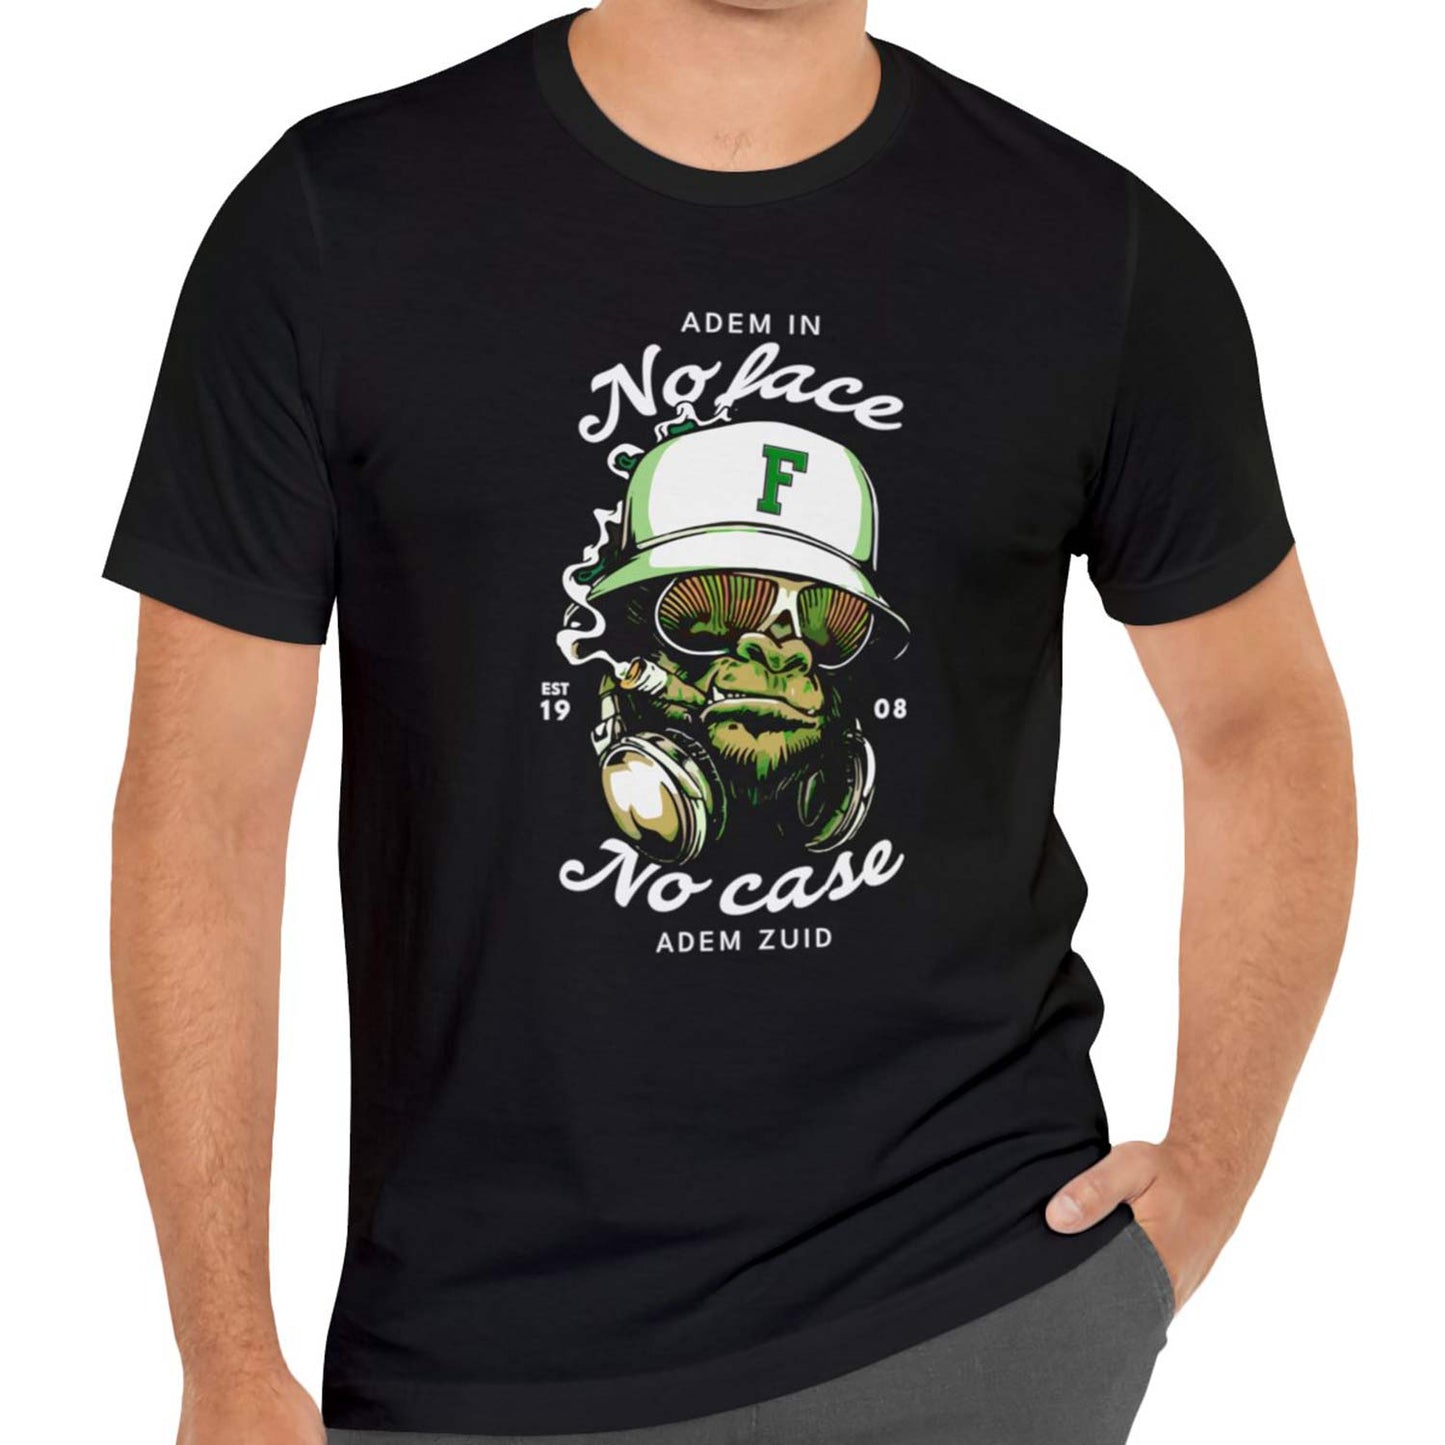 T-shirt regular - Adem in adem Zuid - No face No case - logo voor groot